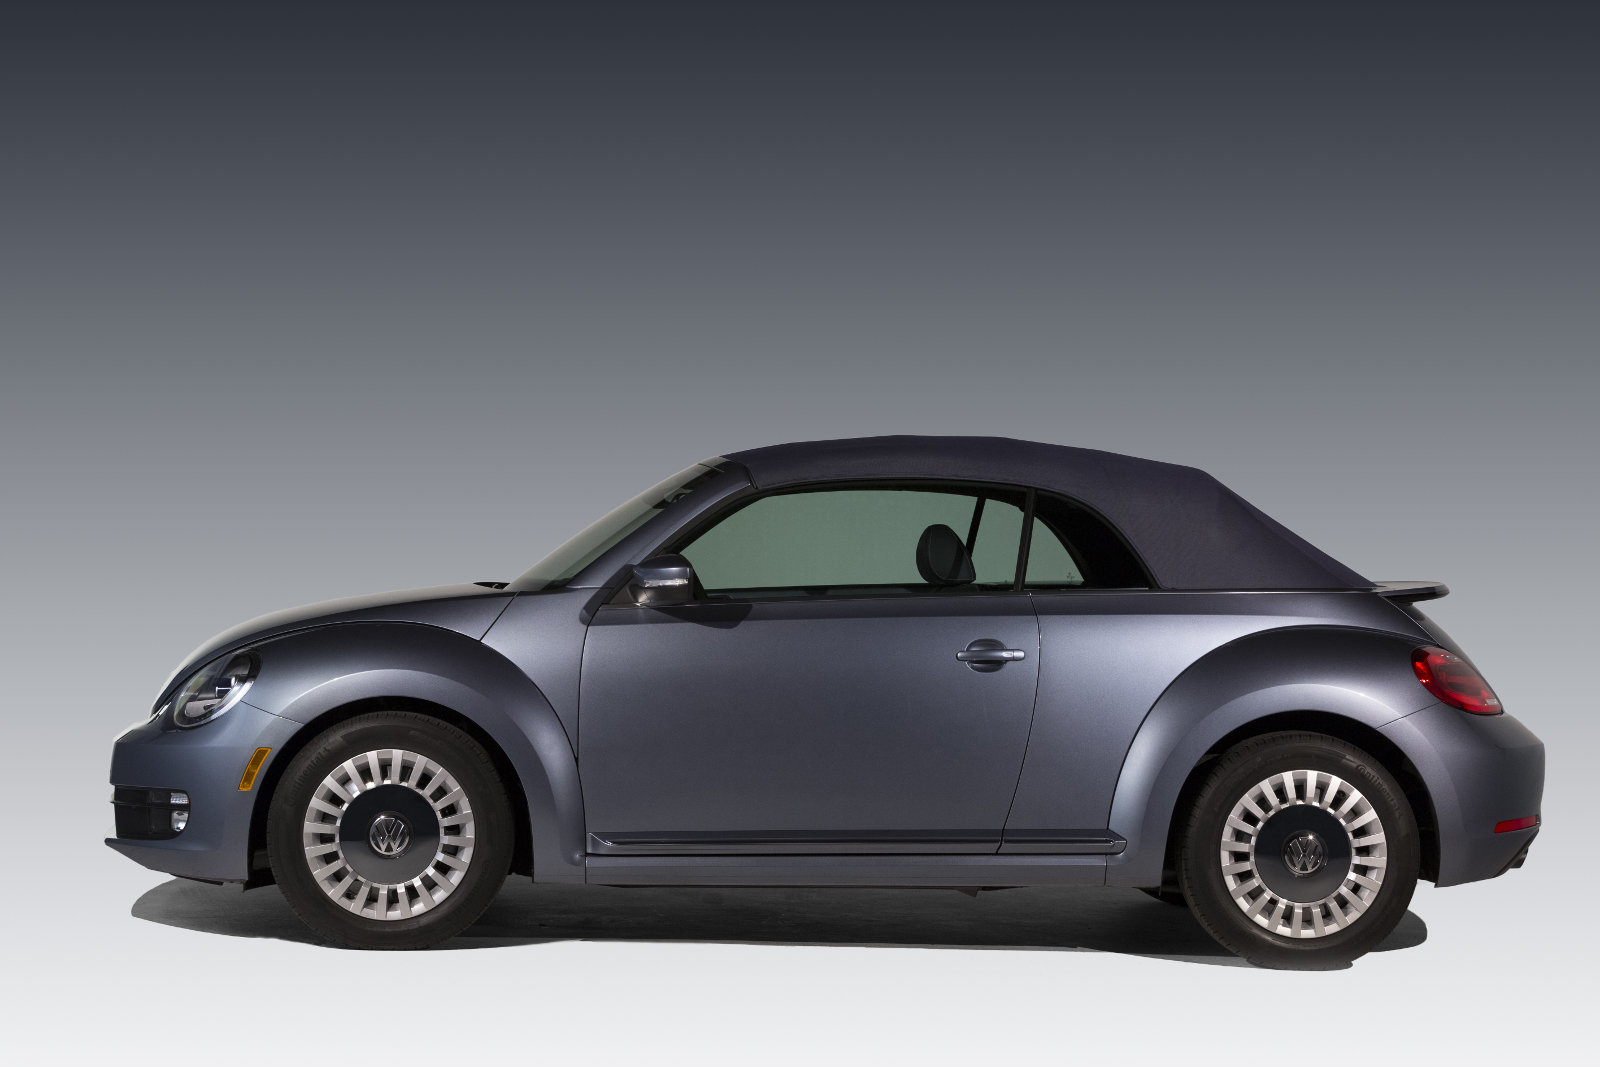 Volkswagen Beetle Denim Edition